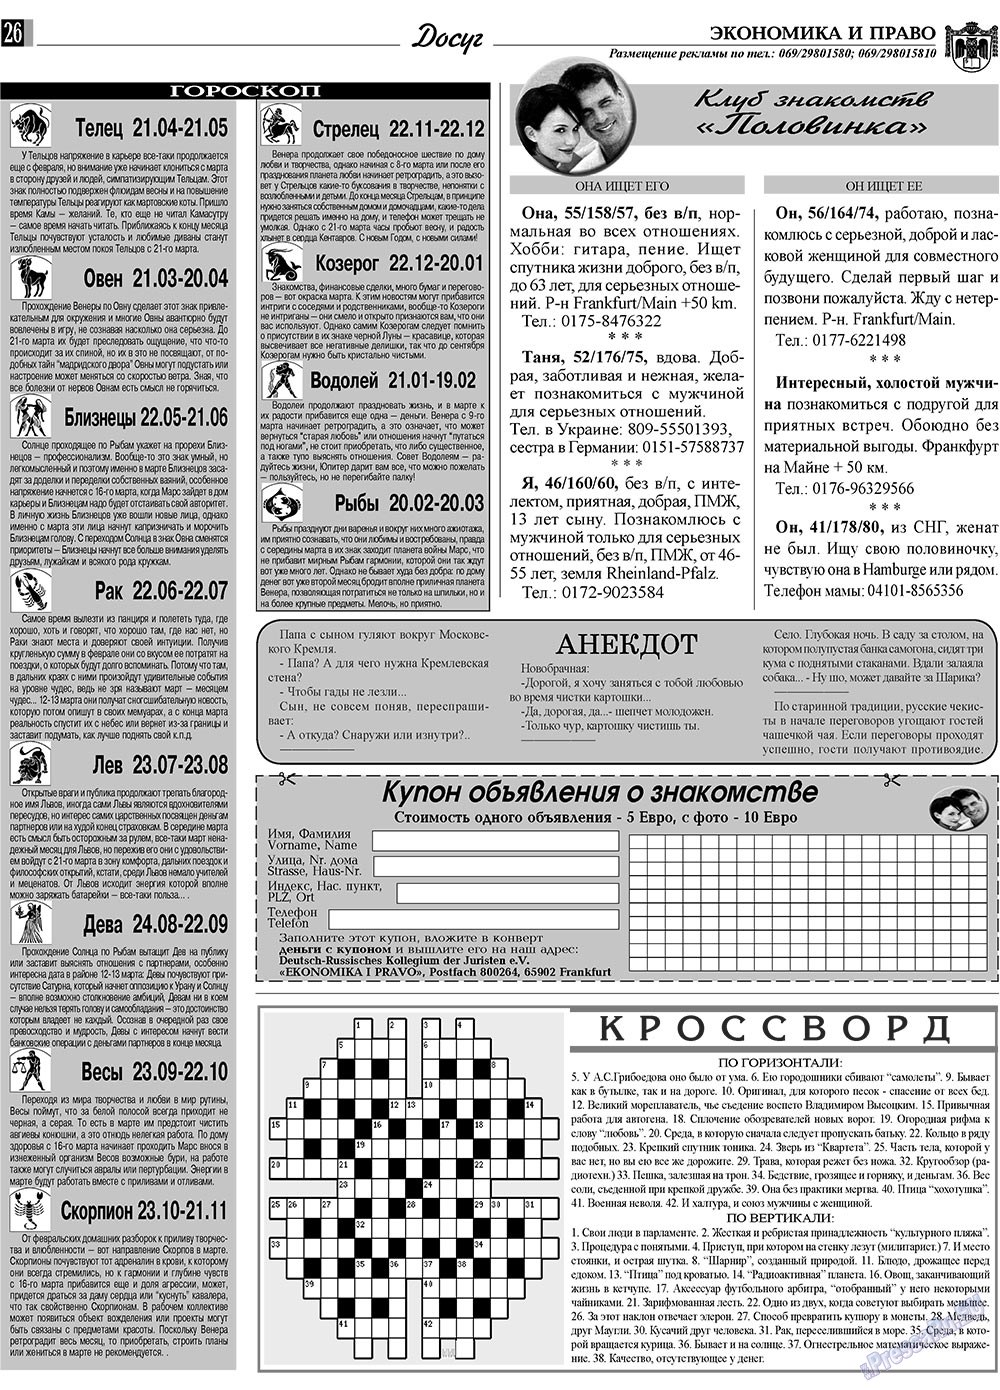 Экономика и право, газета. 2009 №3 стр.26